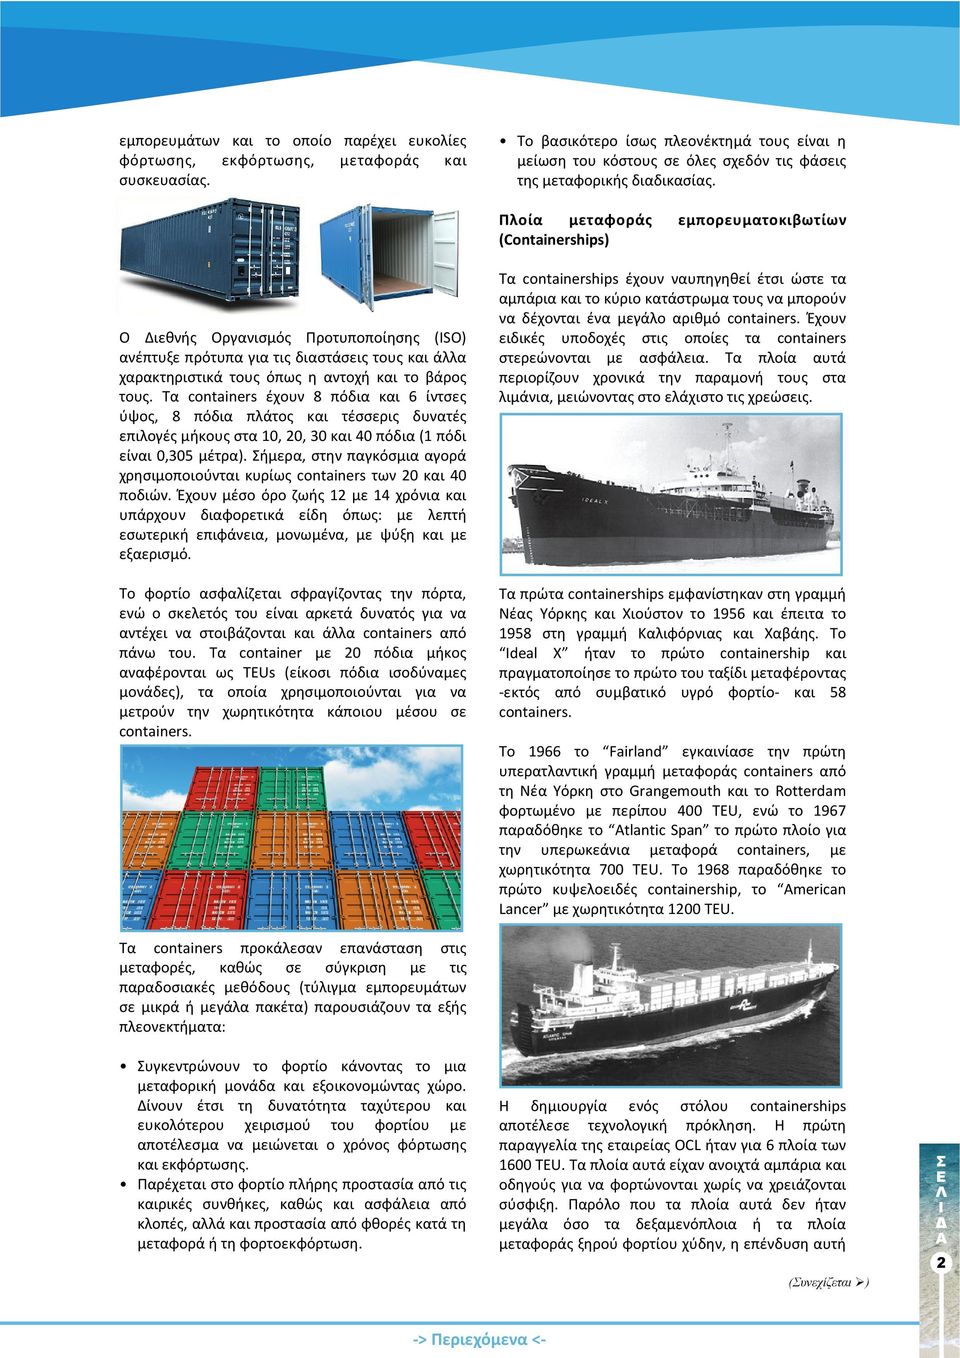 Πλοία μεταφοράς εμπορευματοκιβωτίων (Containerships) Ο Διεθνής Οργανισµός Προτυποποίησης (ISO) ανέπτυξε πρότυπα για τις διαστάσεις τους και άλλα χαρακτηριστικά τους όπως η αντοχή και το βάρος τους.